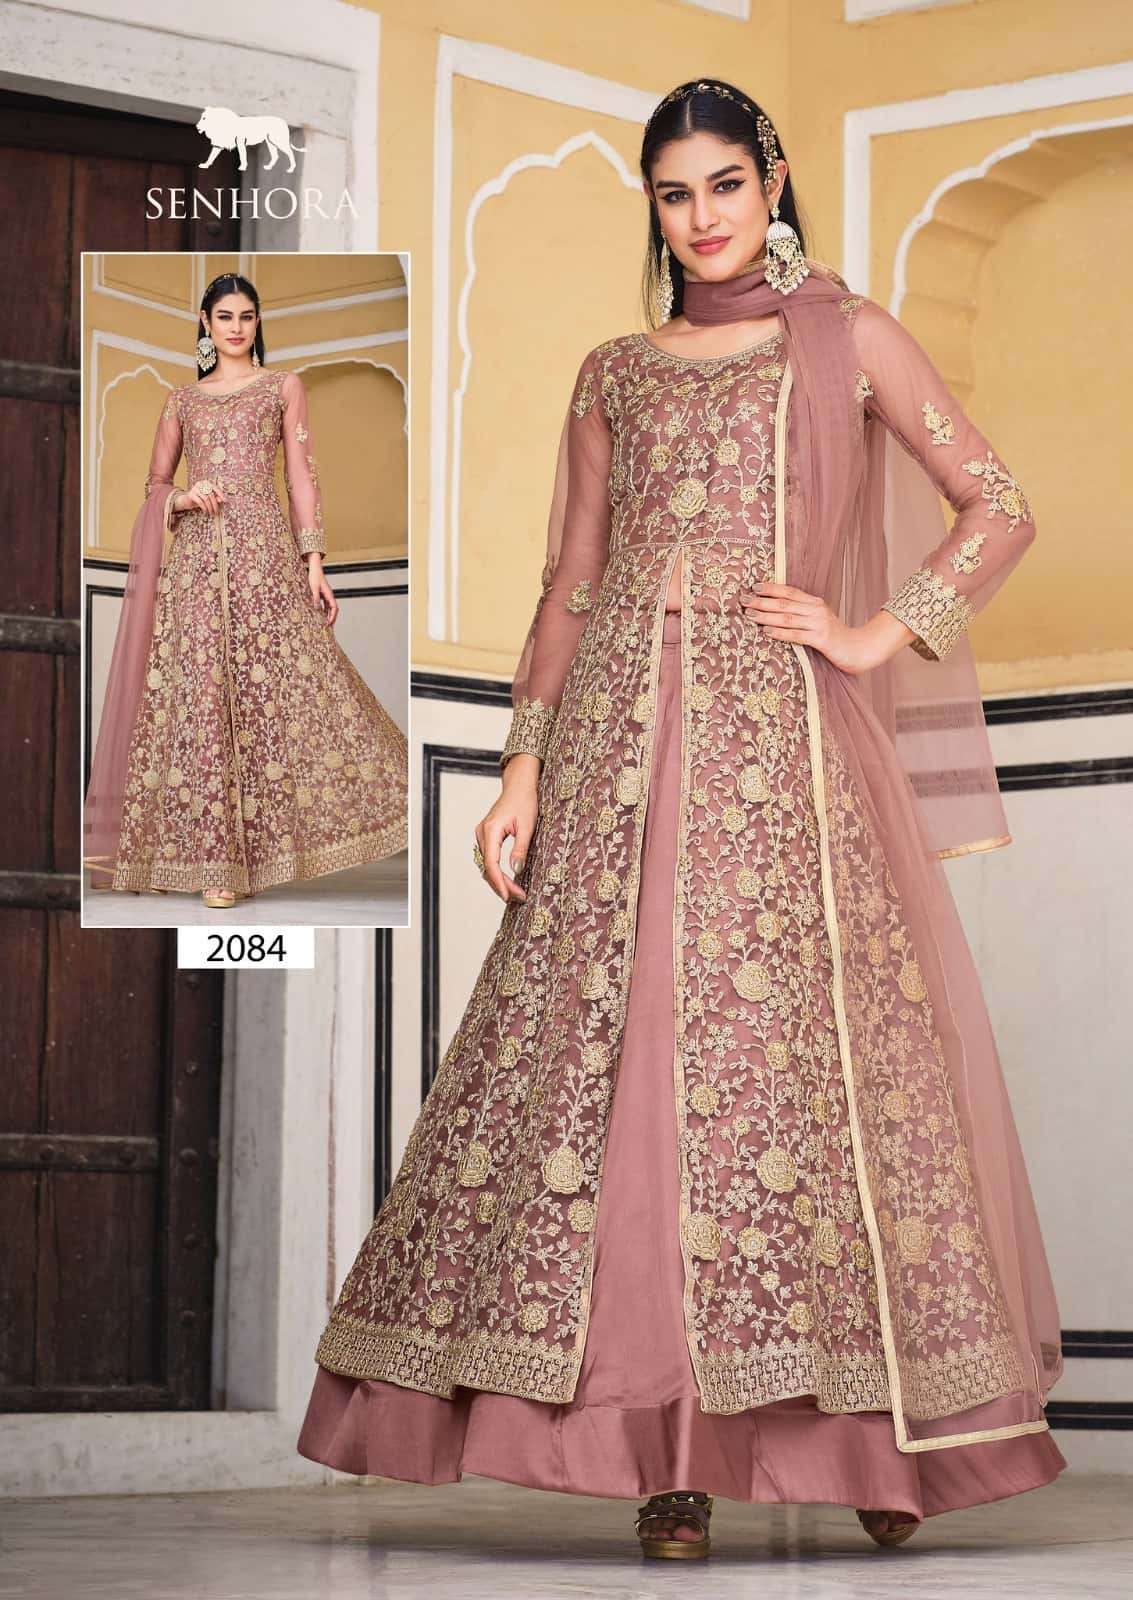 Senhora 2084 Samara Wedding Wear Designer Gown Style Dress  Collection